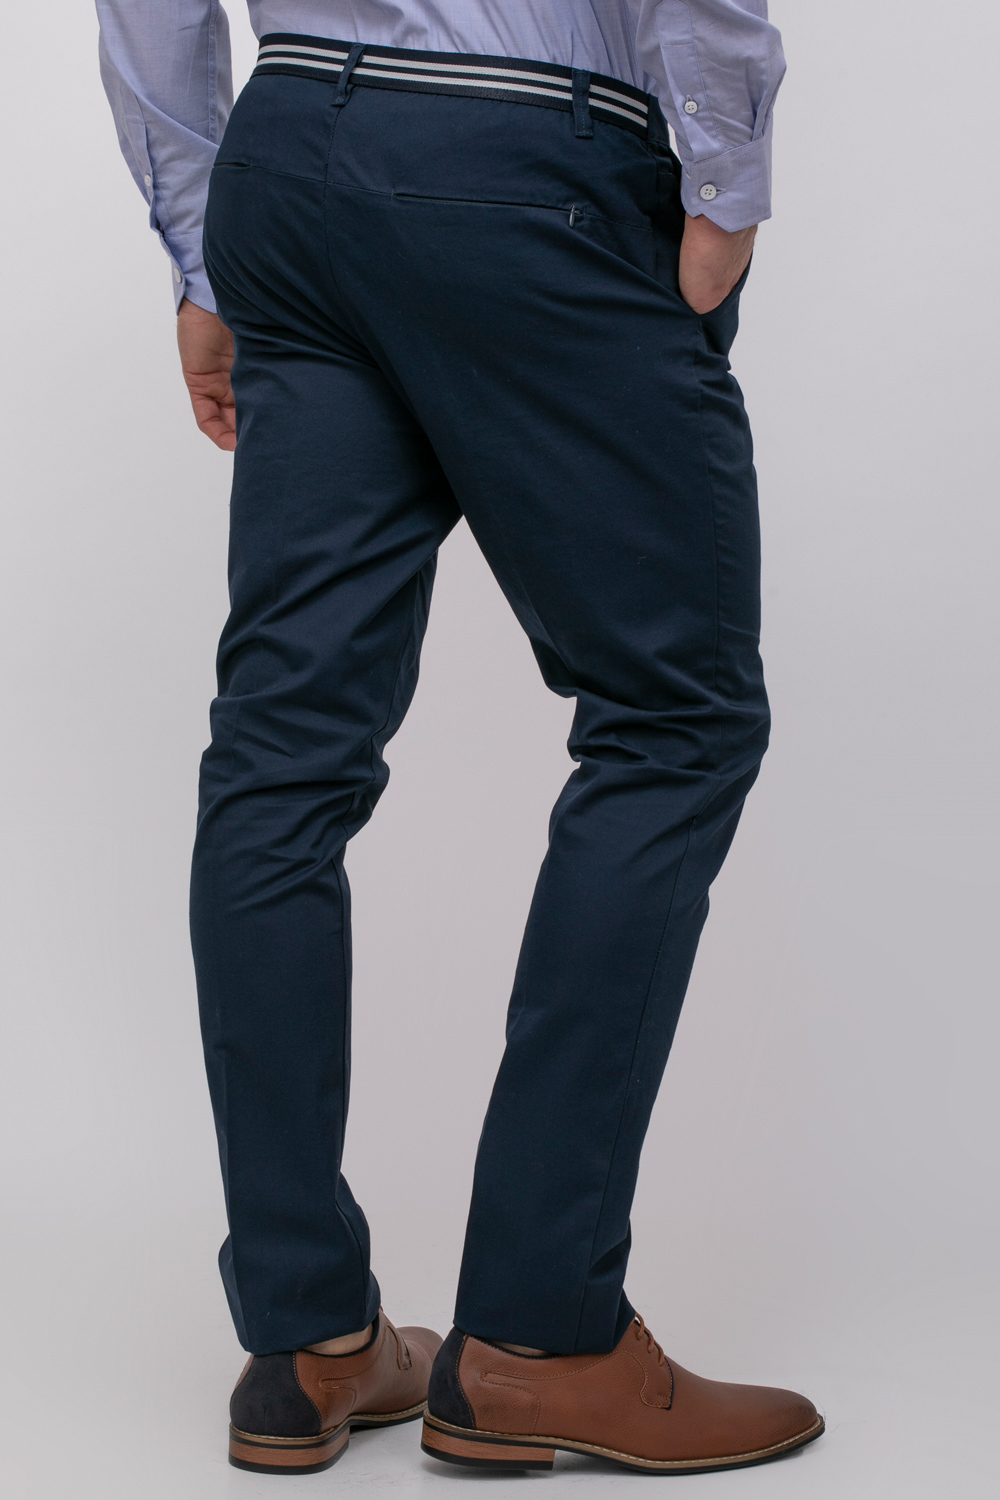 מכנסיים אלגנטיים סטרצ' עם פס גומי בחגורה אחורית